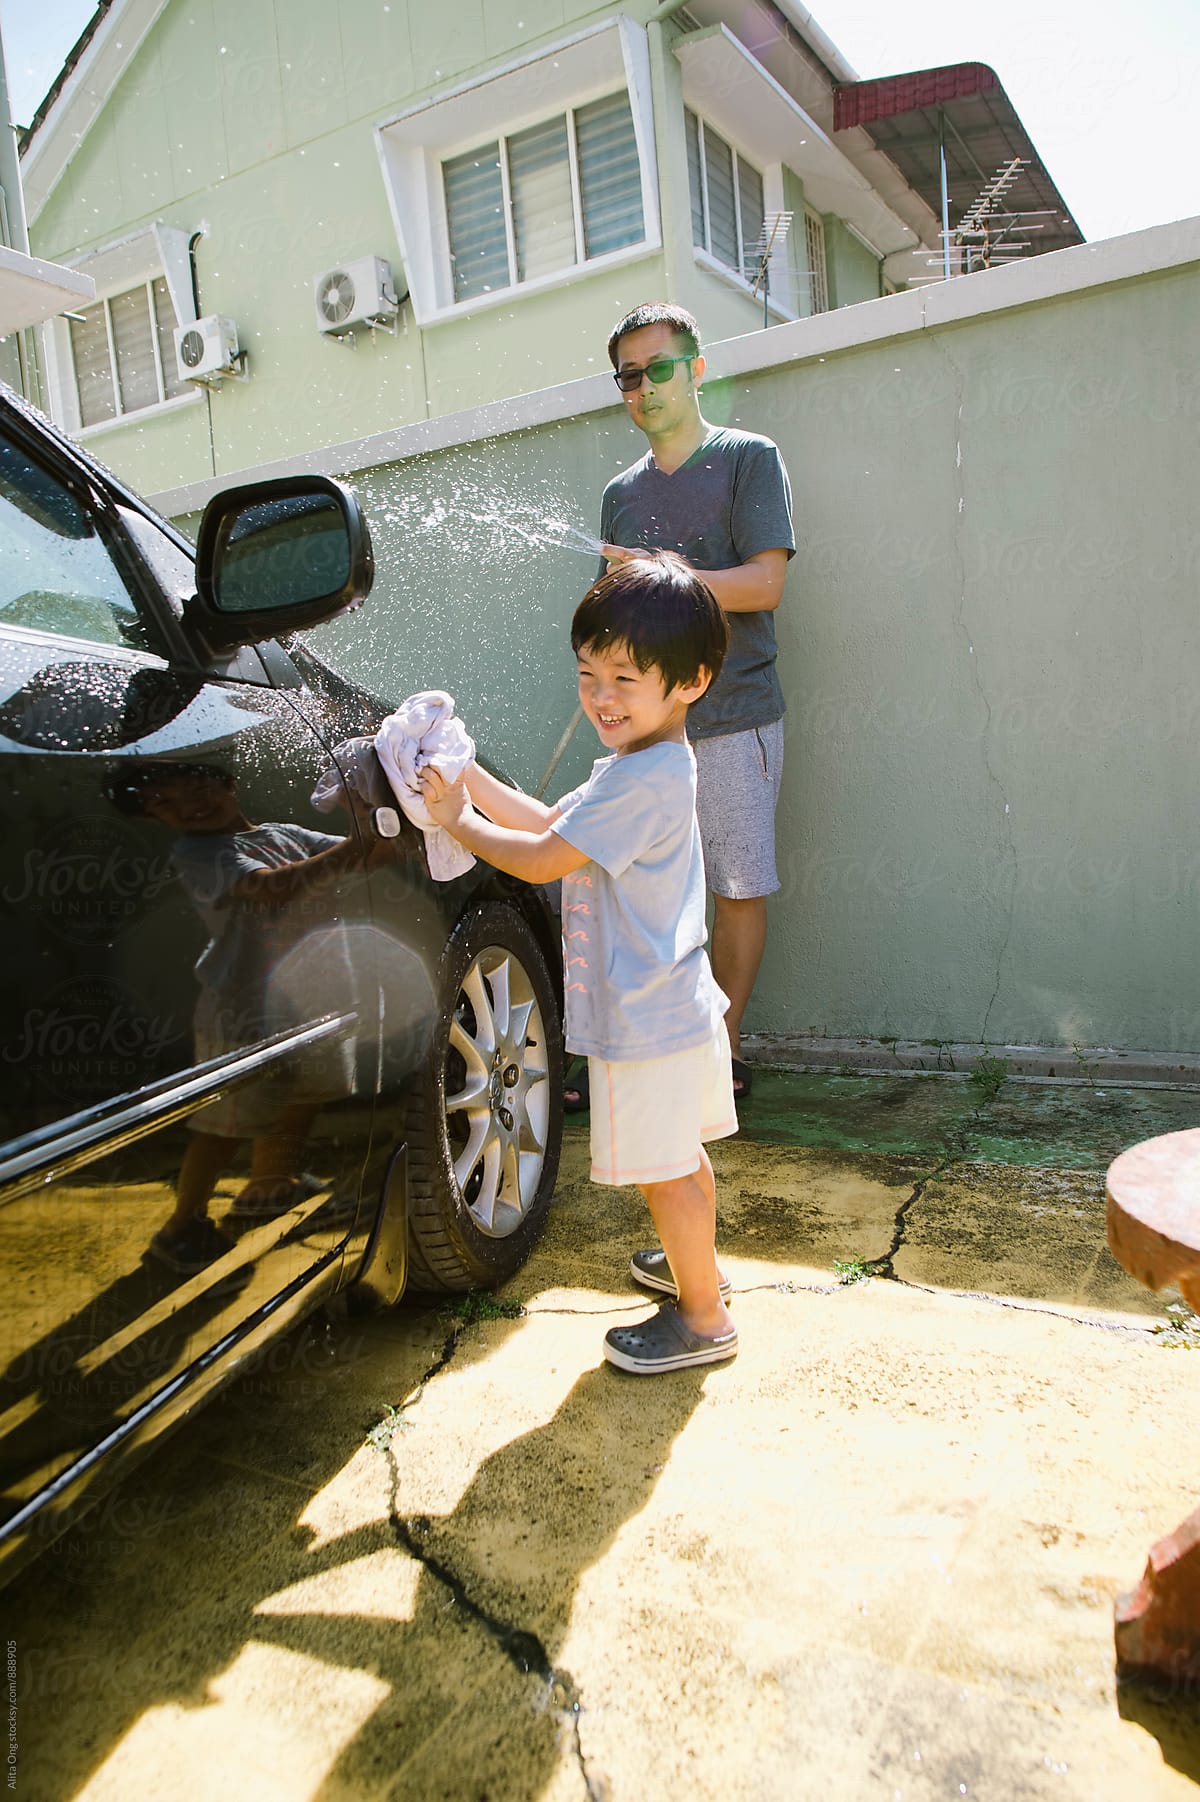 Help Dad wash the car